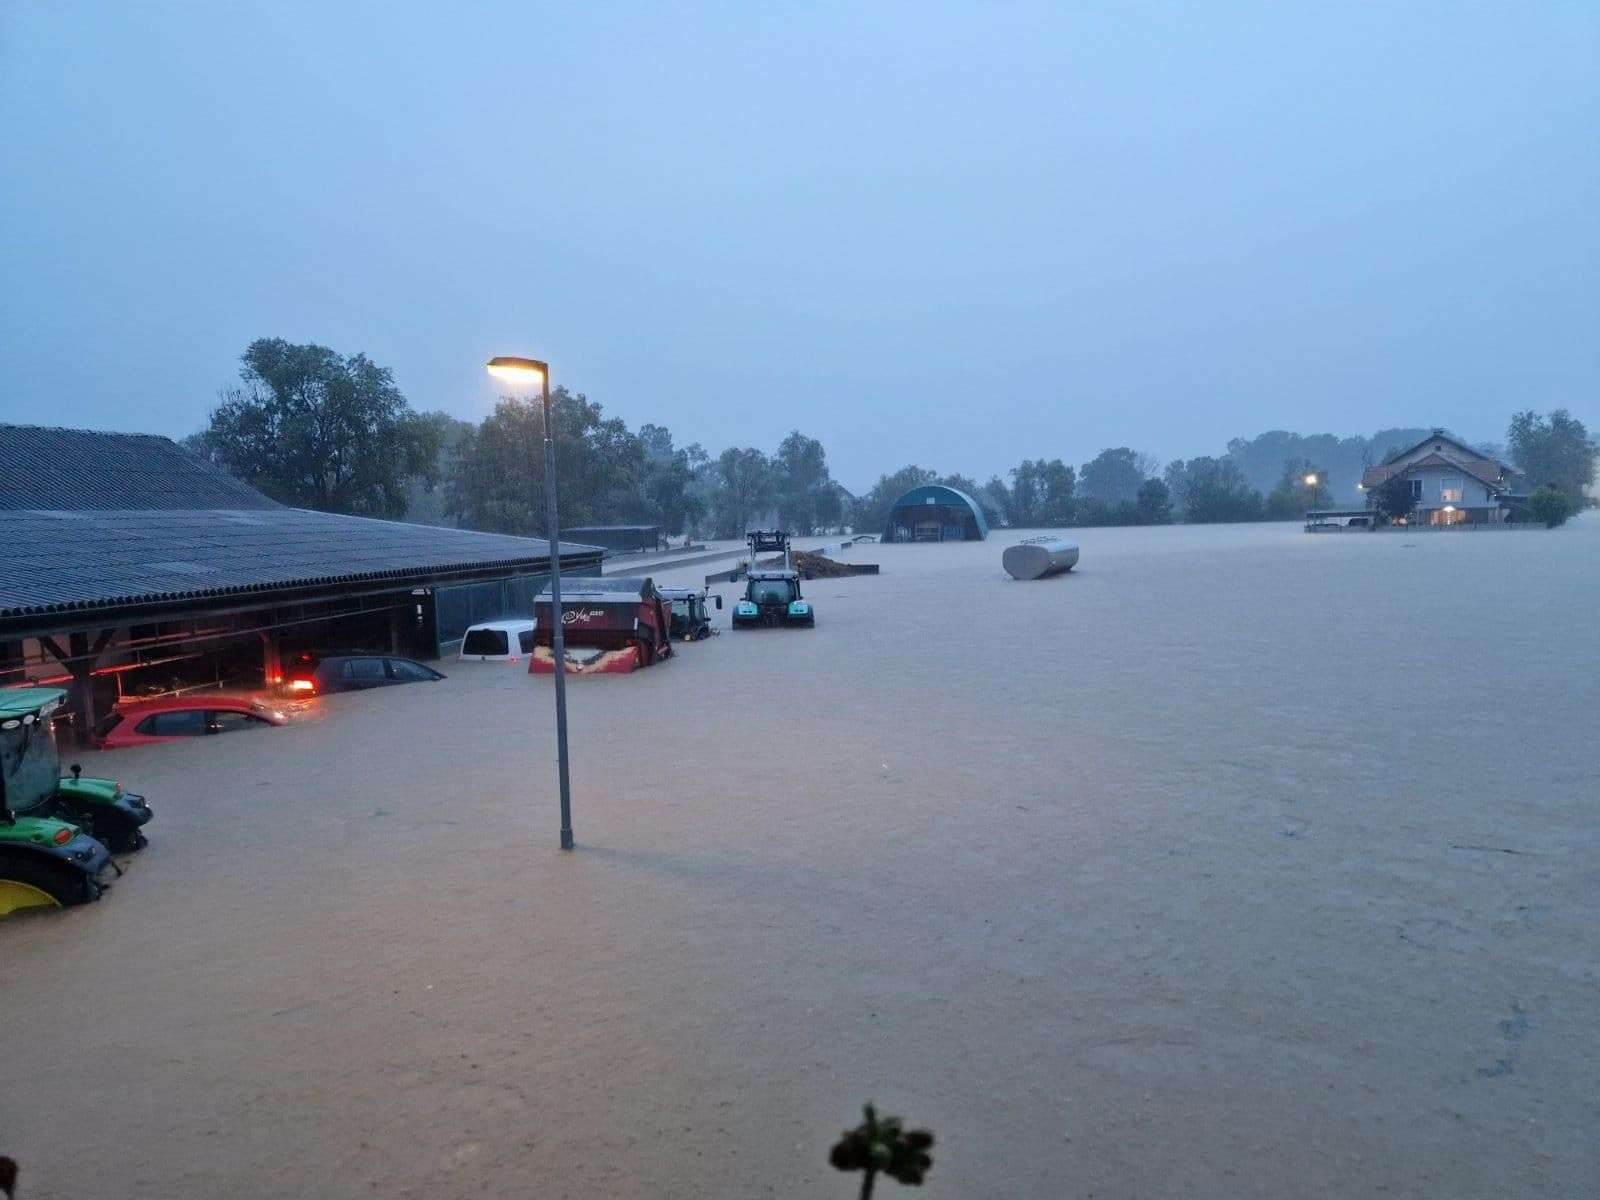 Poplave v Mostah pri Komendi. Narasla voda povzroča ogromno škodo v kmetijstvu.